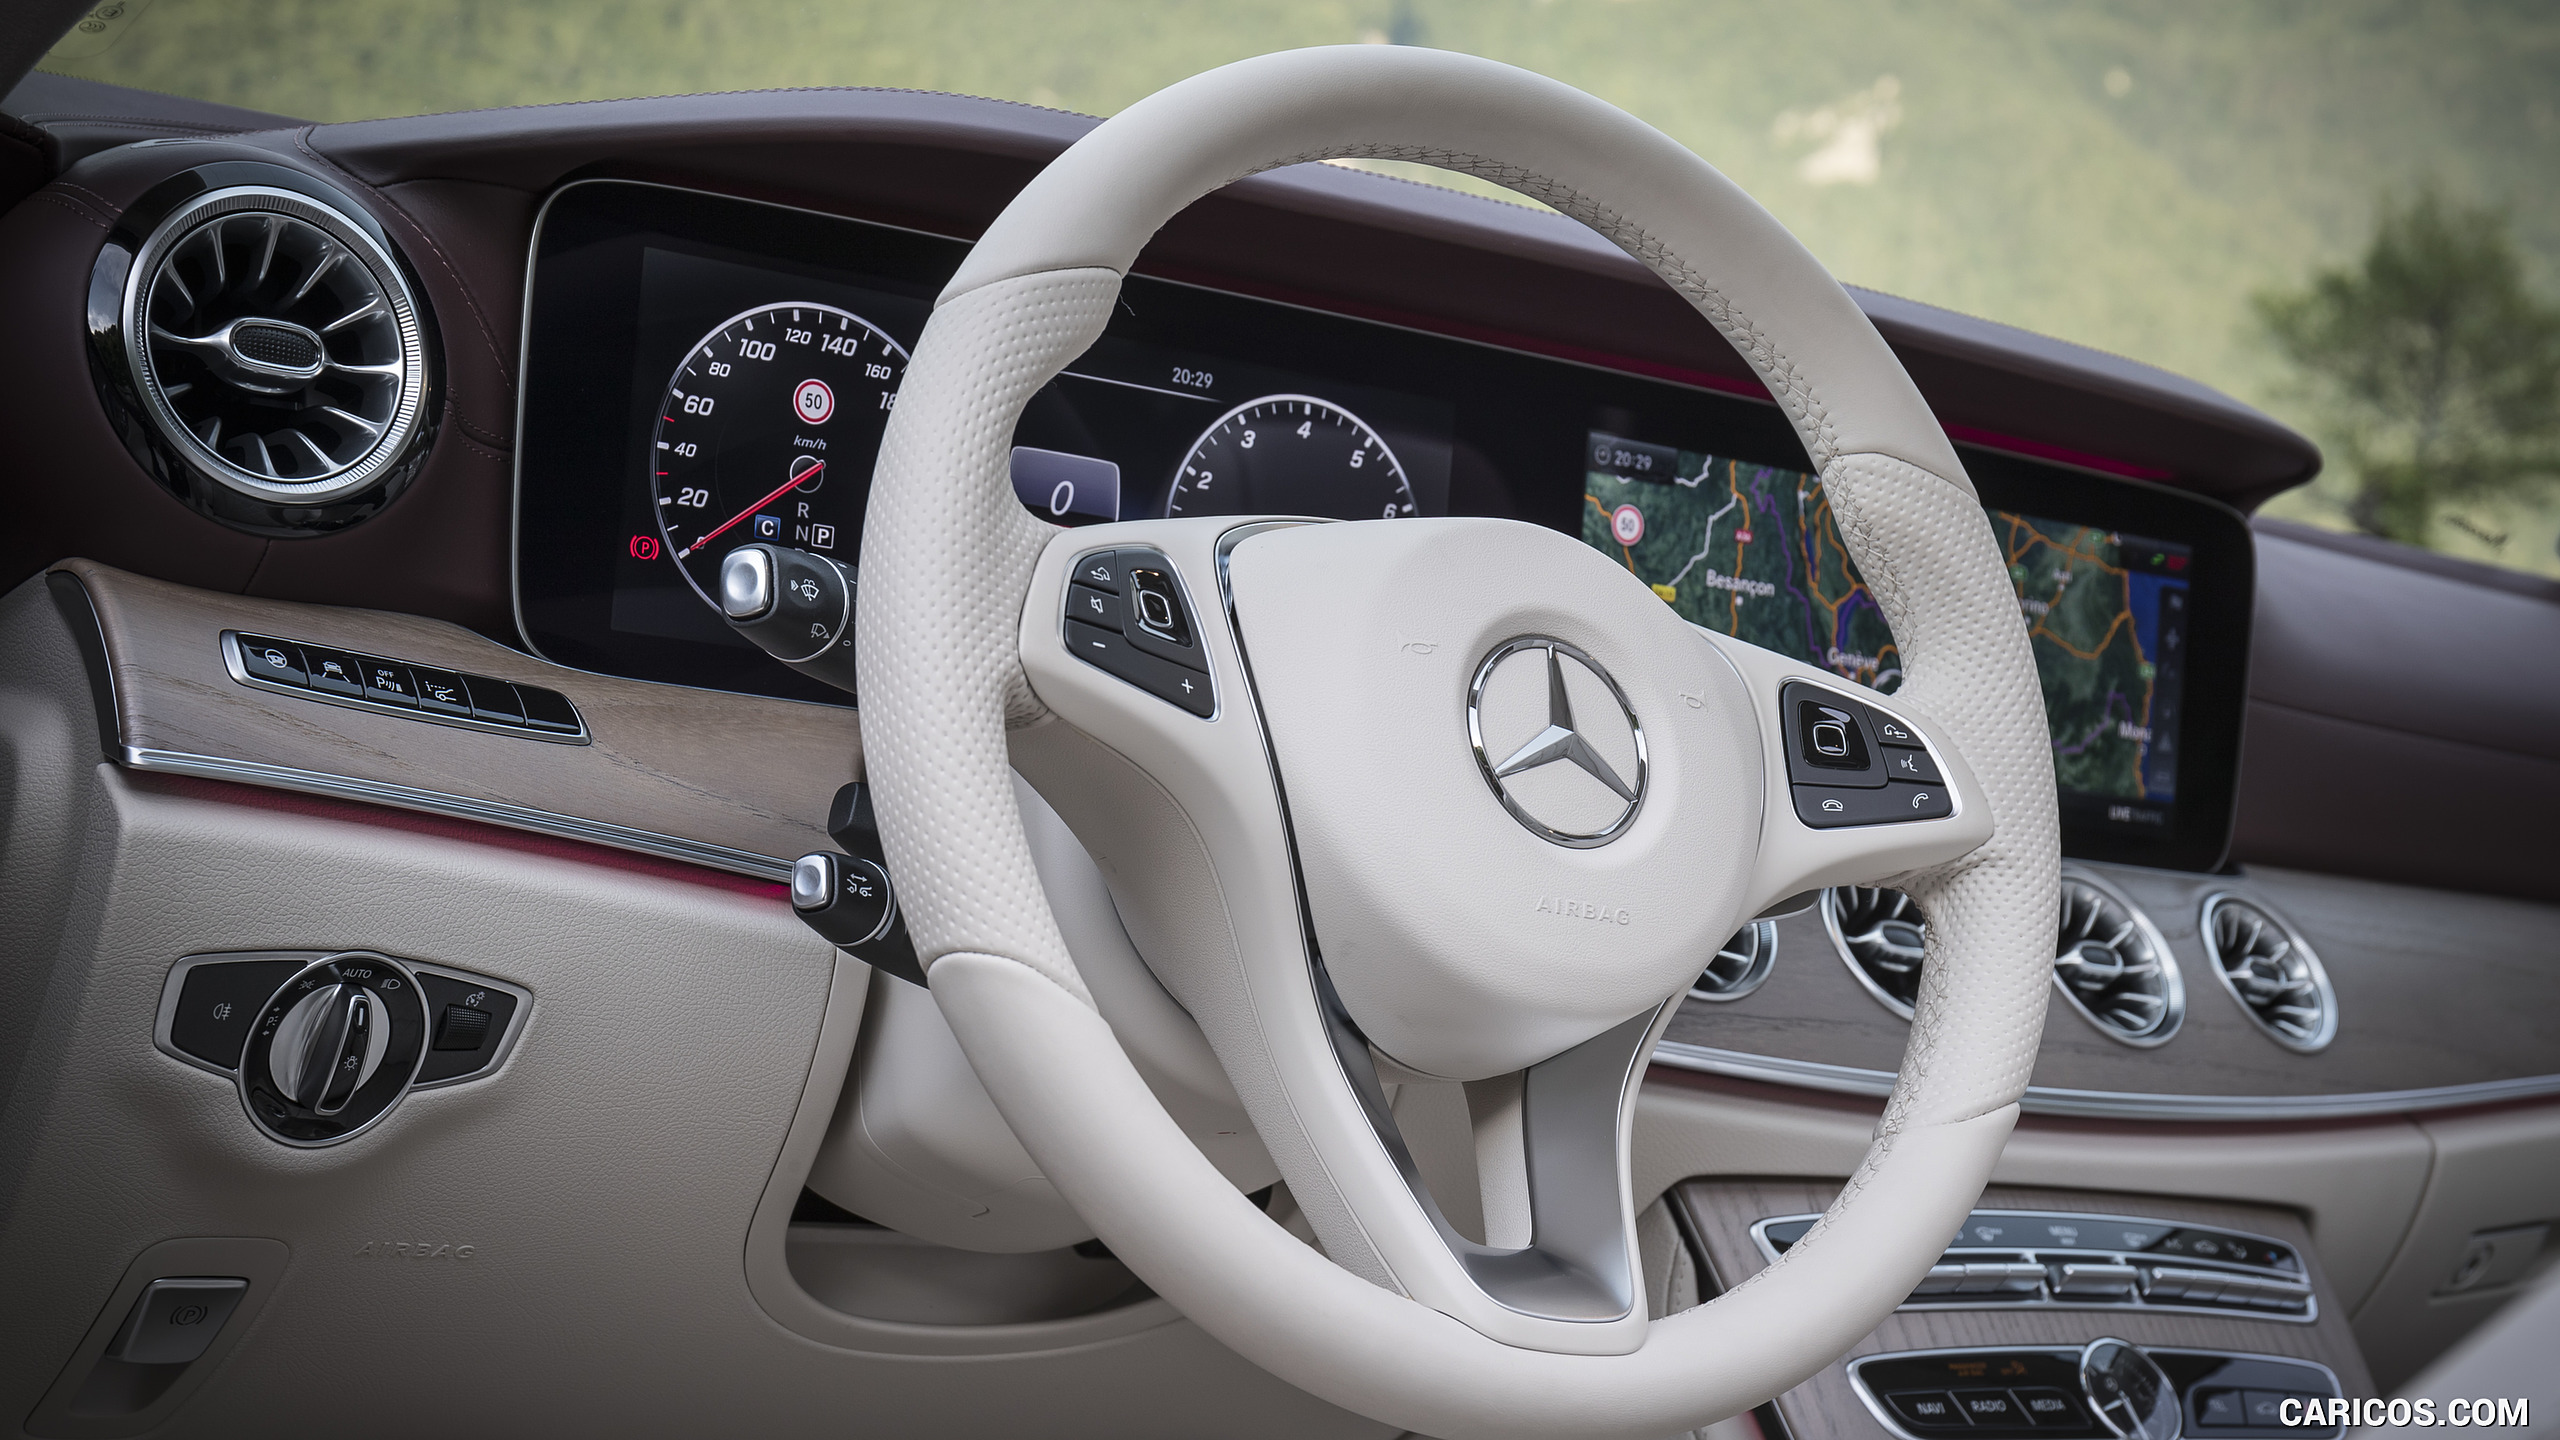 2018 Mercedes-Benz E-Class E400 Cabrio 4MATIC 25th Anniversary Edtion - Interior, Steering Wheel, #124 of 158